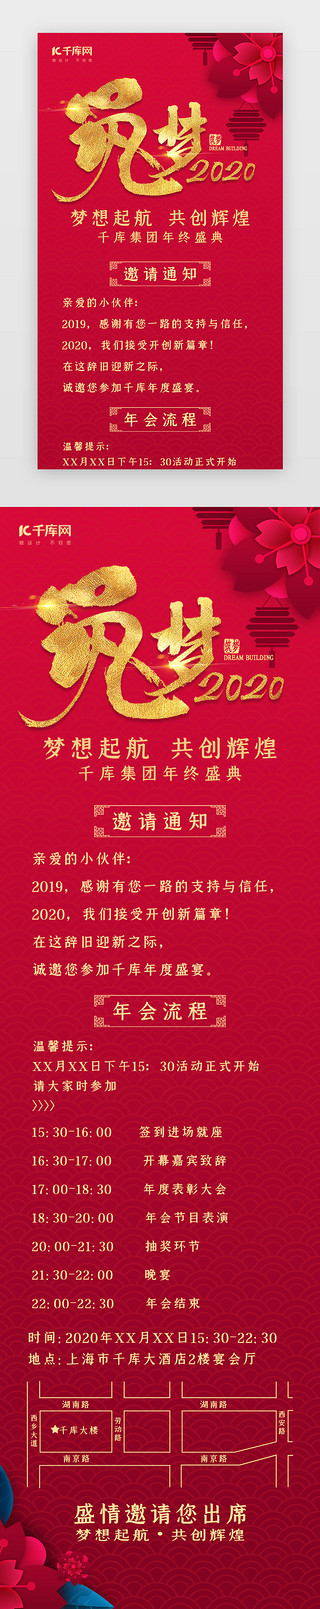 中国风筑梦2020公司年会活动h5长图